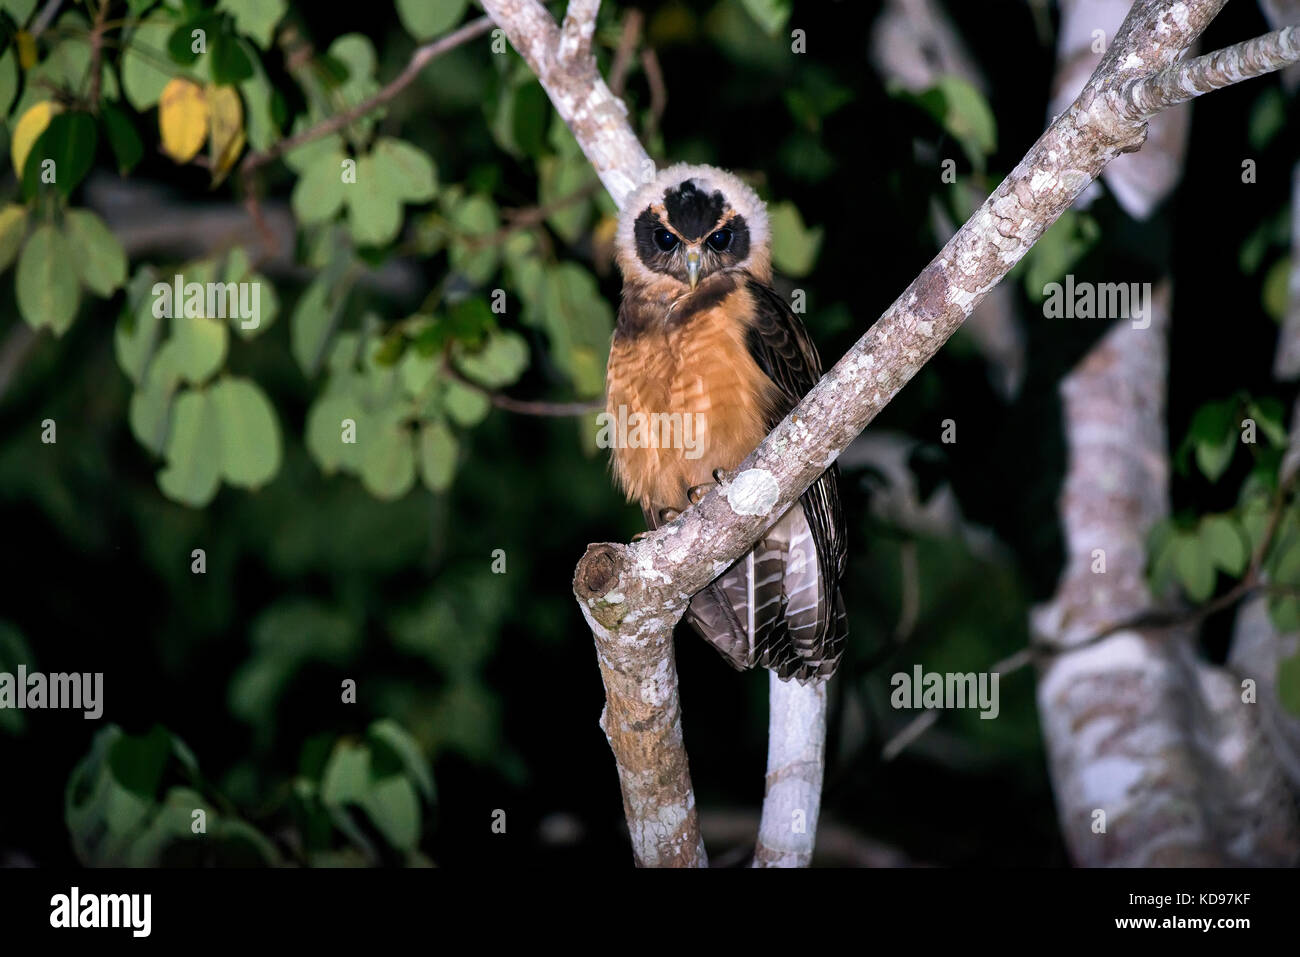 'Murucututu-de-barriga-amarela (Pulsatrix koeniswaldiana) fotografado em Conceição da Barra, Espírito Santo - Sudeste do Brasil. Bioma Mata Atlântica Stockfoto